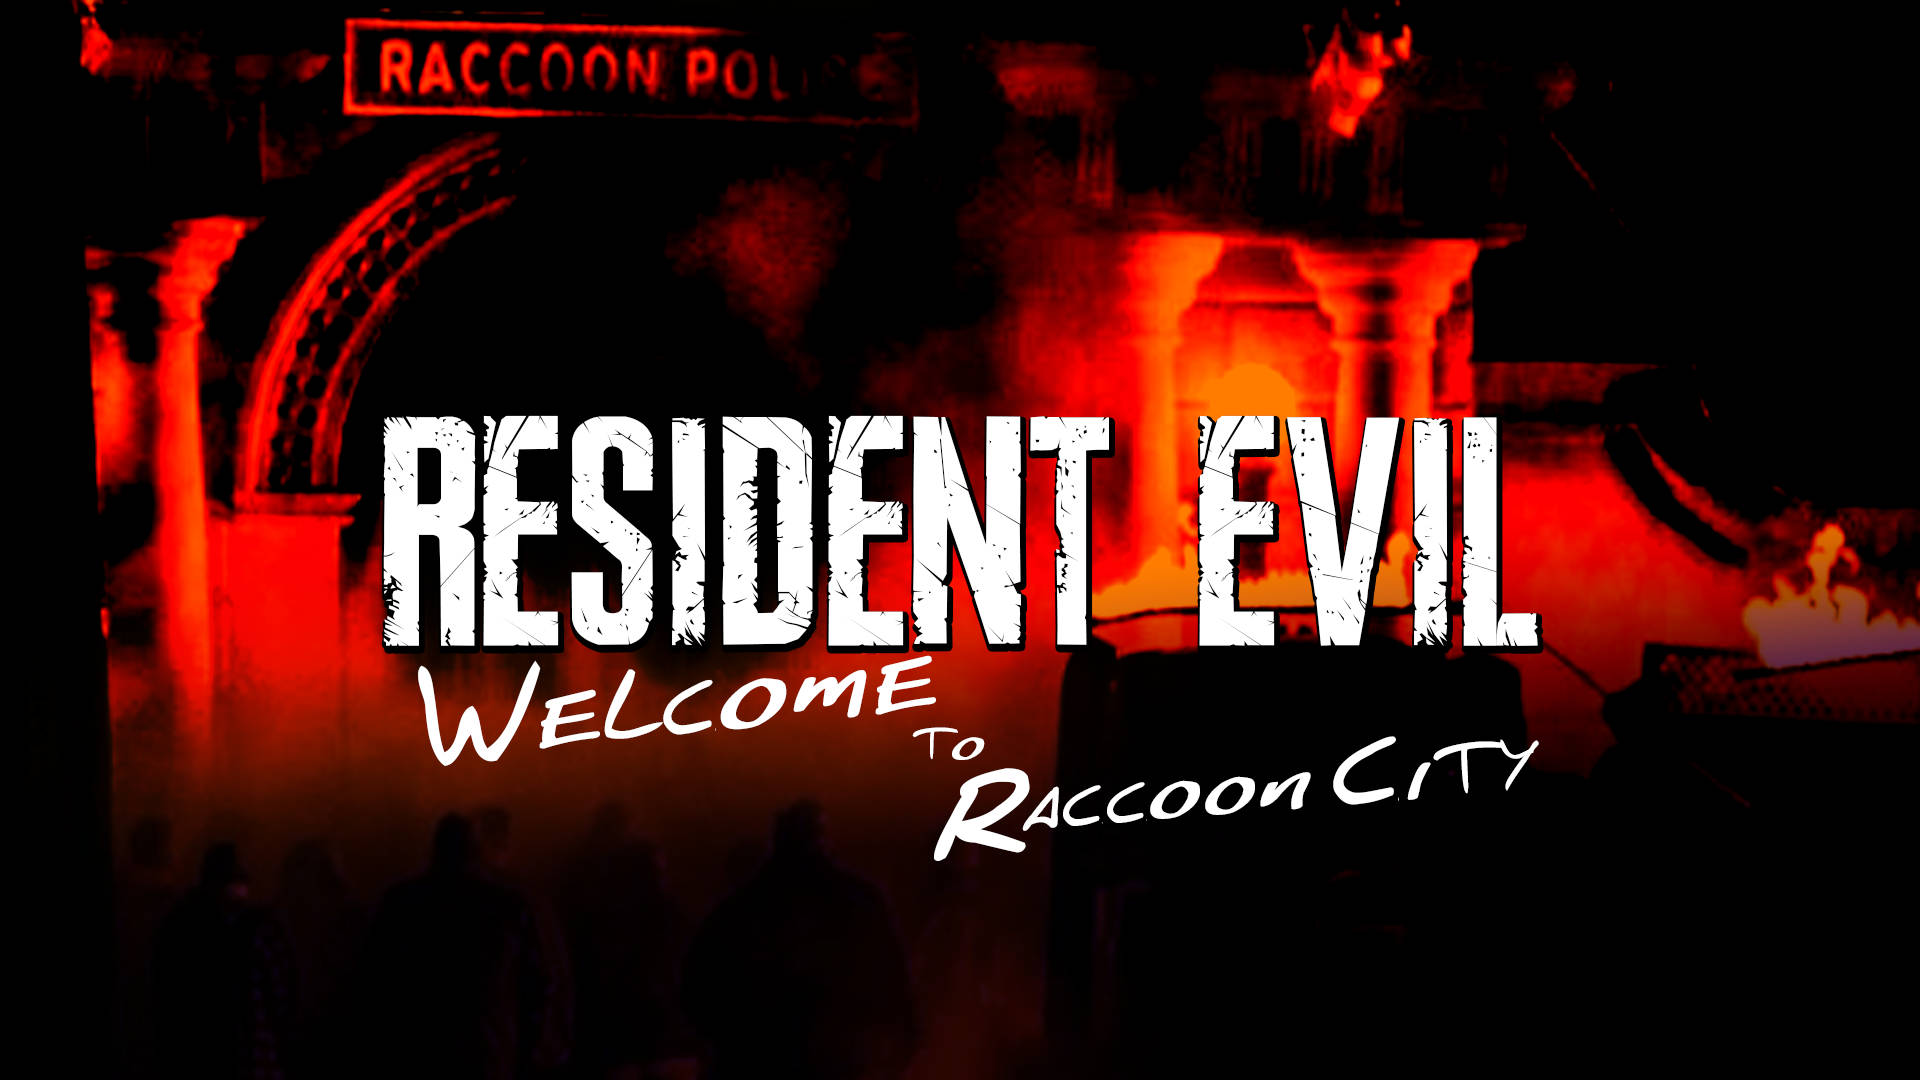 Velkommen til Raccoon City Monochrome Wallpaper Resident Evil Wallpaper